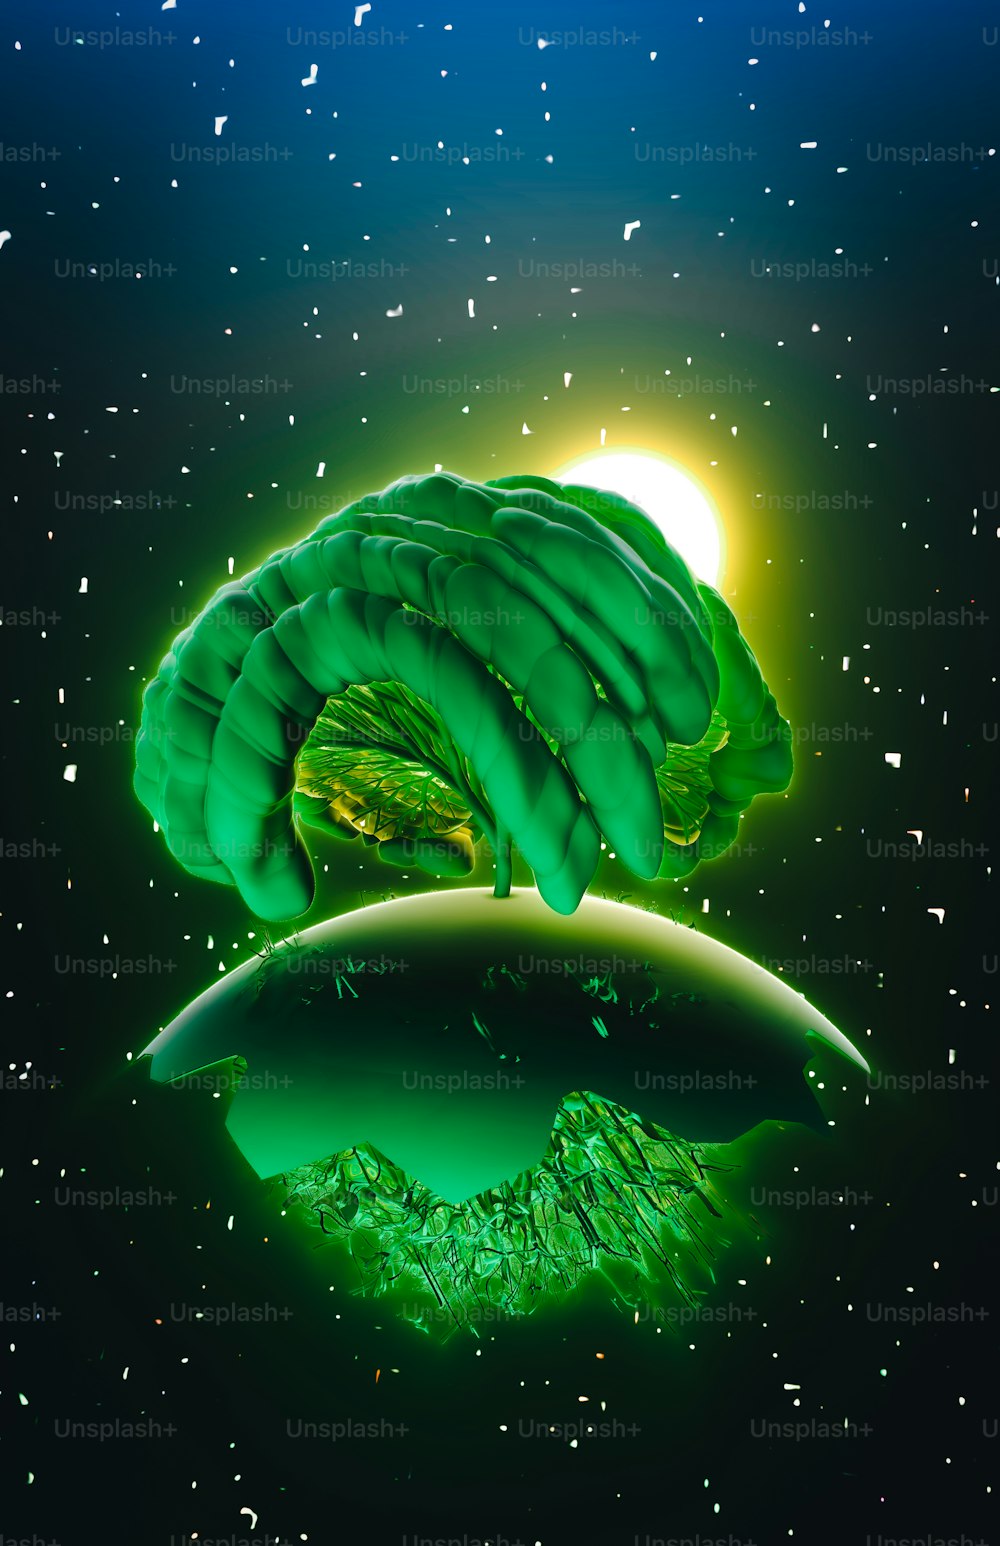 Una imagen de un objeto verde flotando en el aire